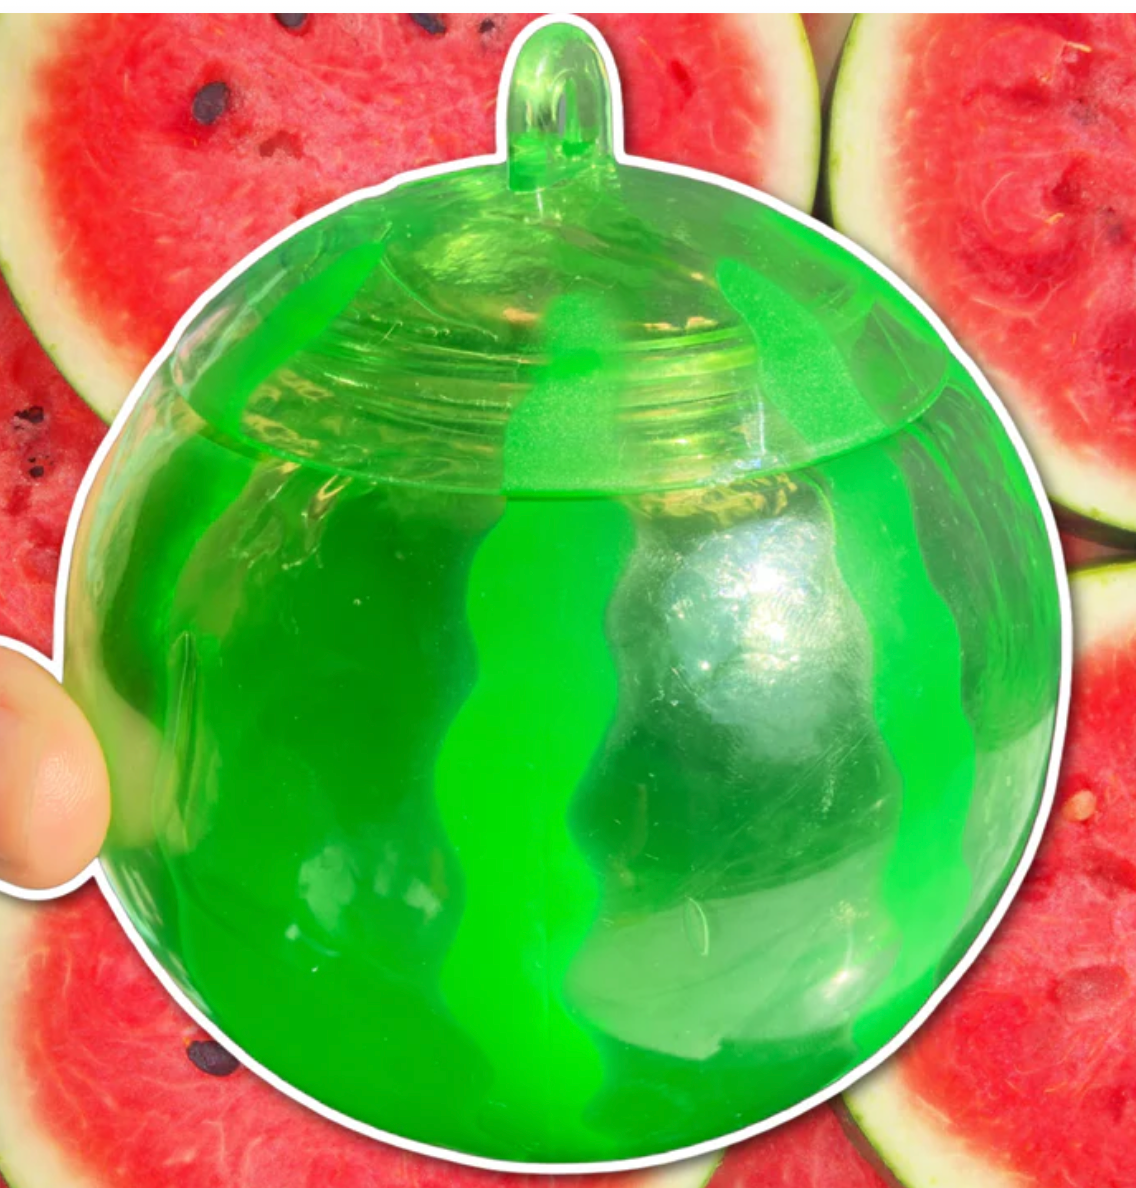 Fruit Water Slime 5 PACK